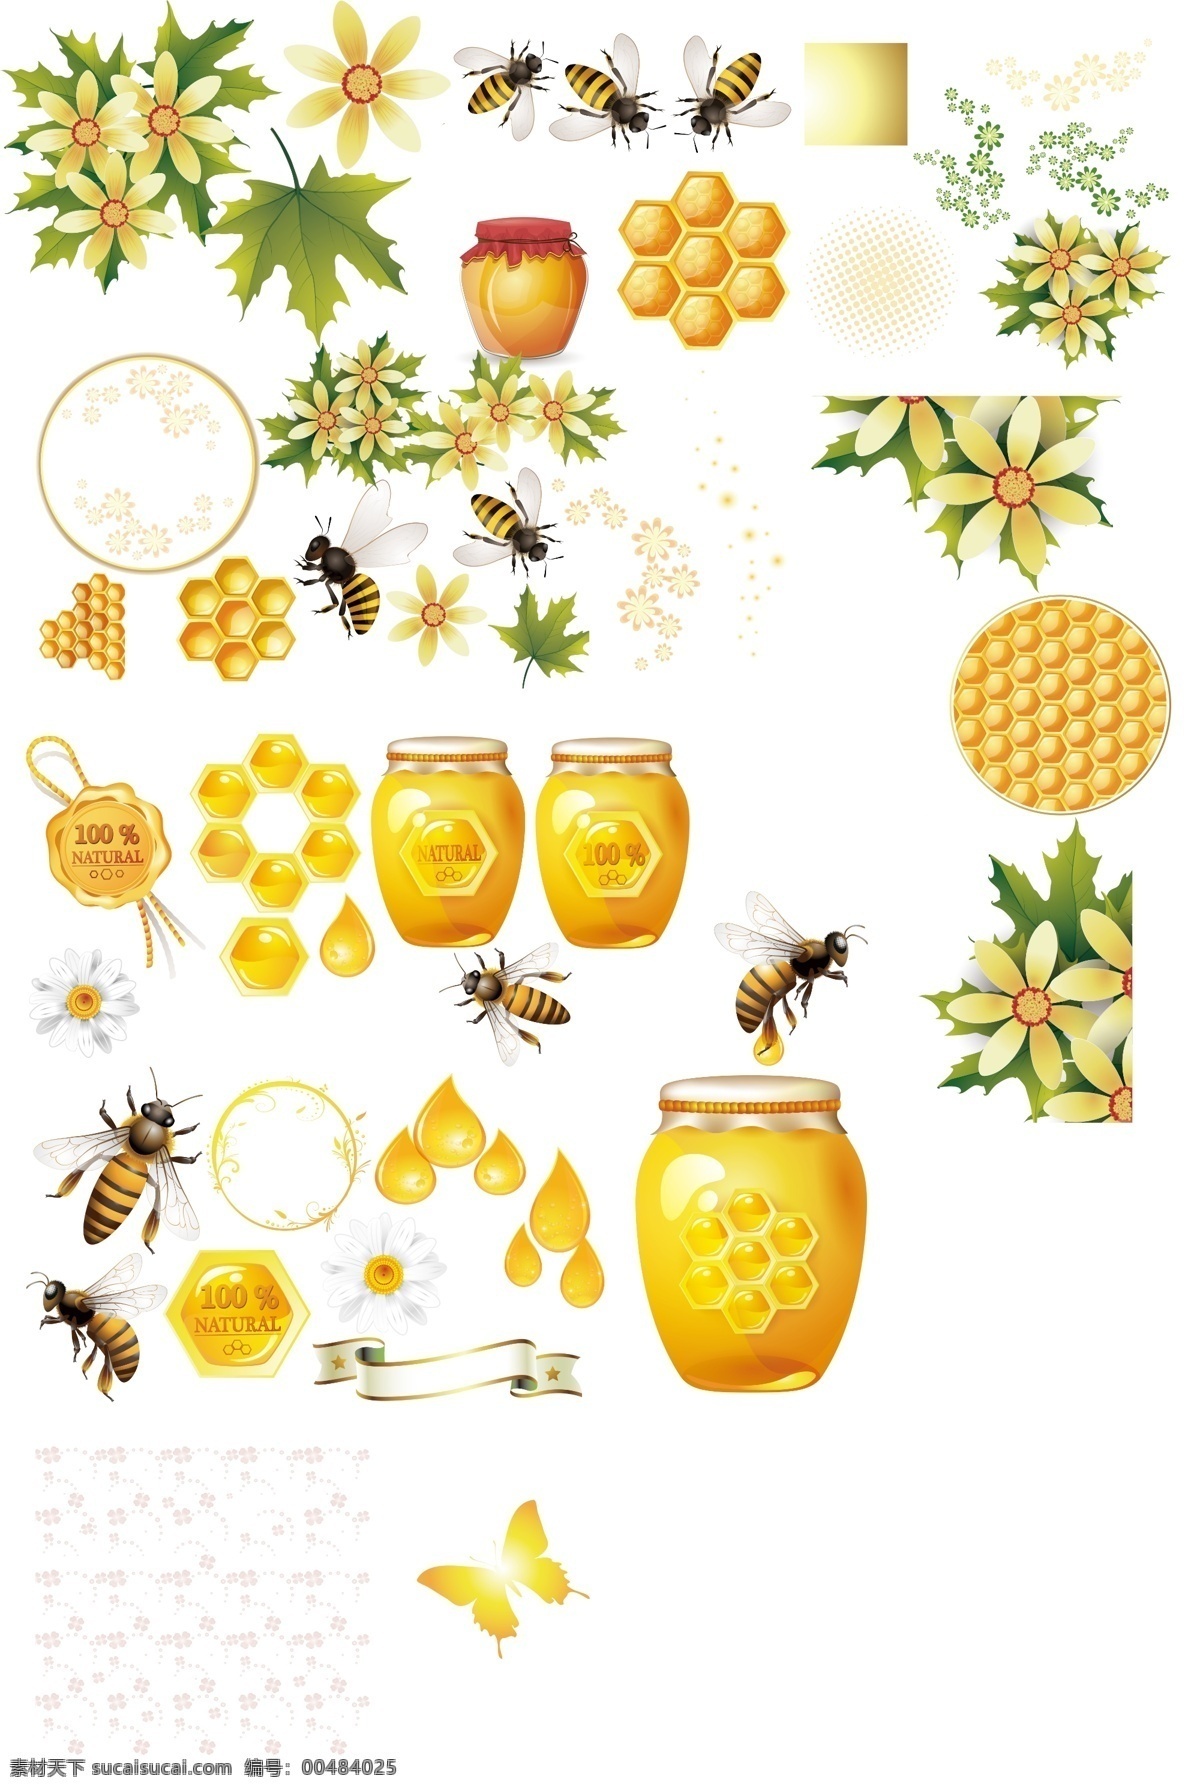 背景 底纹 蜂巢 蜂窝 花卉 金色 昆虫 梦幻 蜜蜂和蜂蜜 糖罐 蜂蜜 蜜蜂 矢量 模板下载 蜂蜜蜂巢蜜蜂 蜜蜂主题 psd源文件